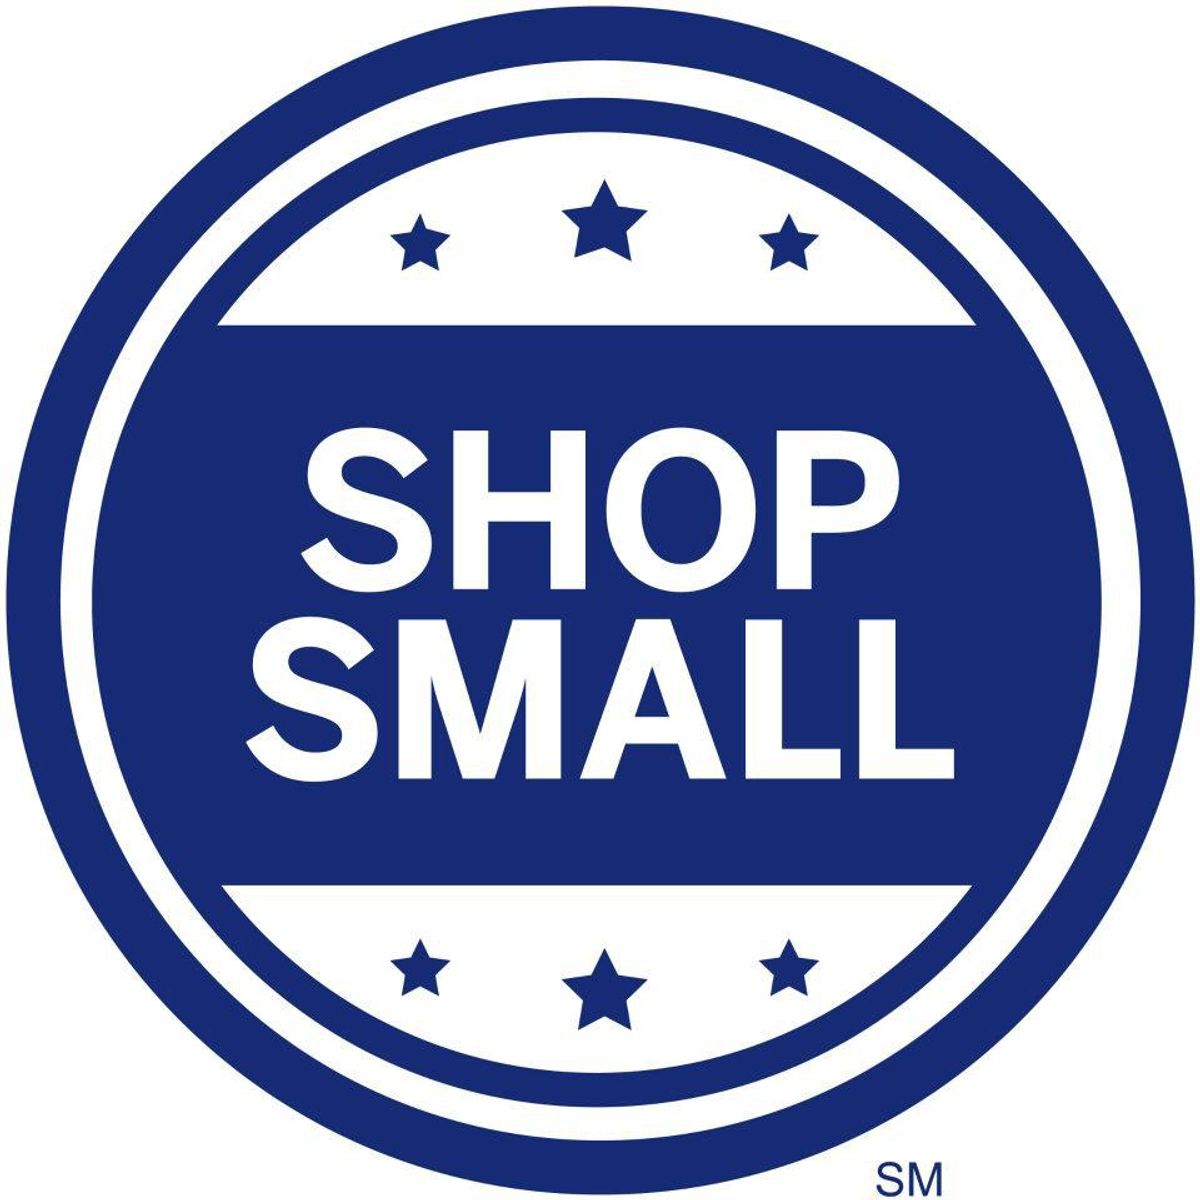 Shop Small This Holiday Season